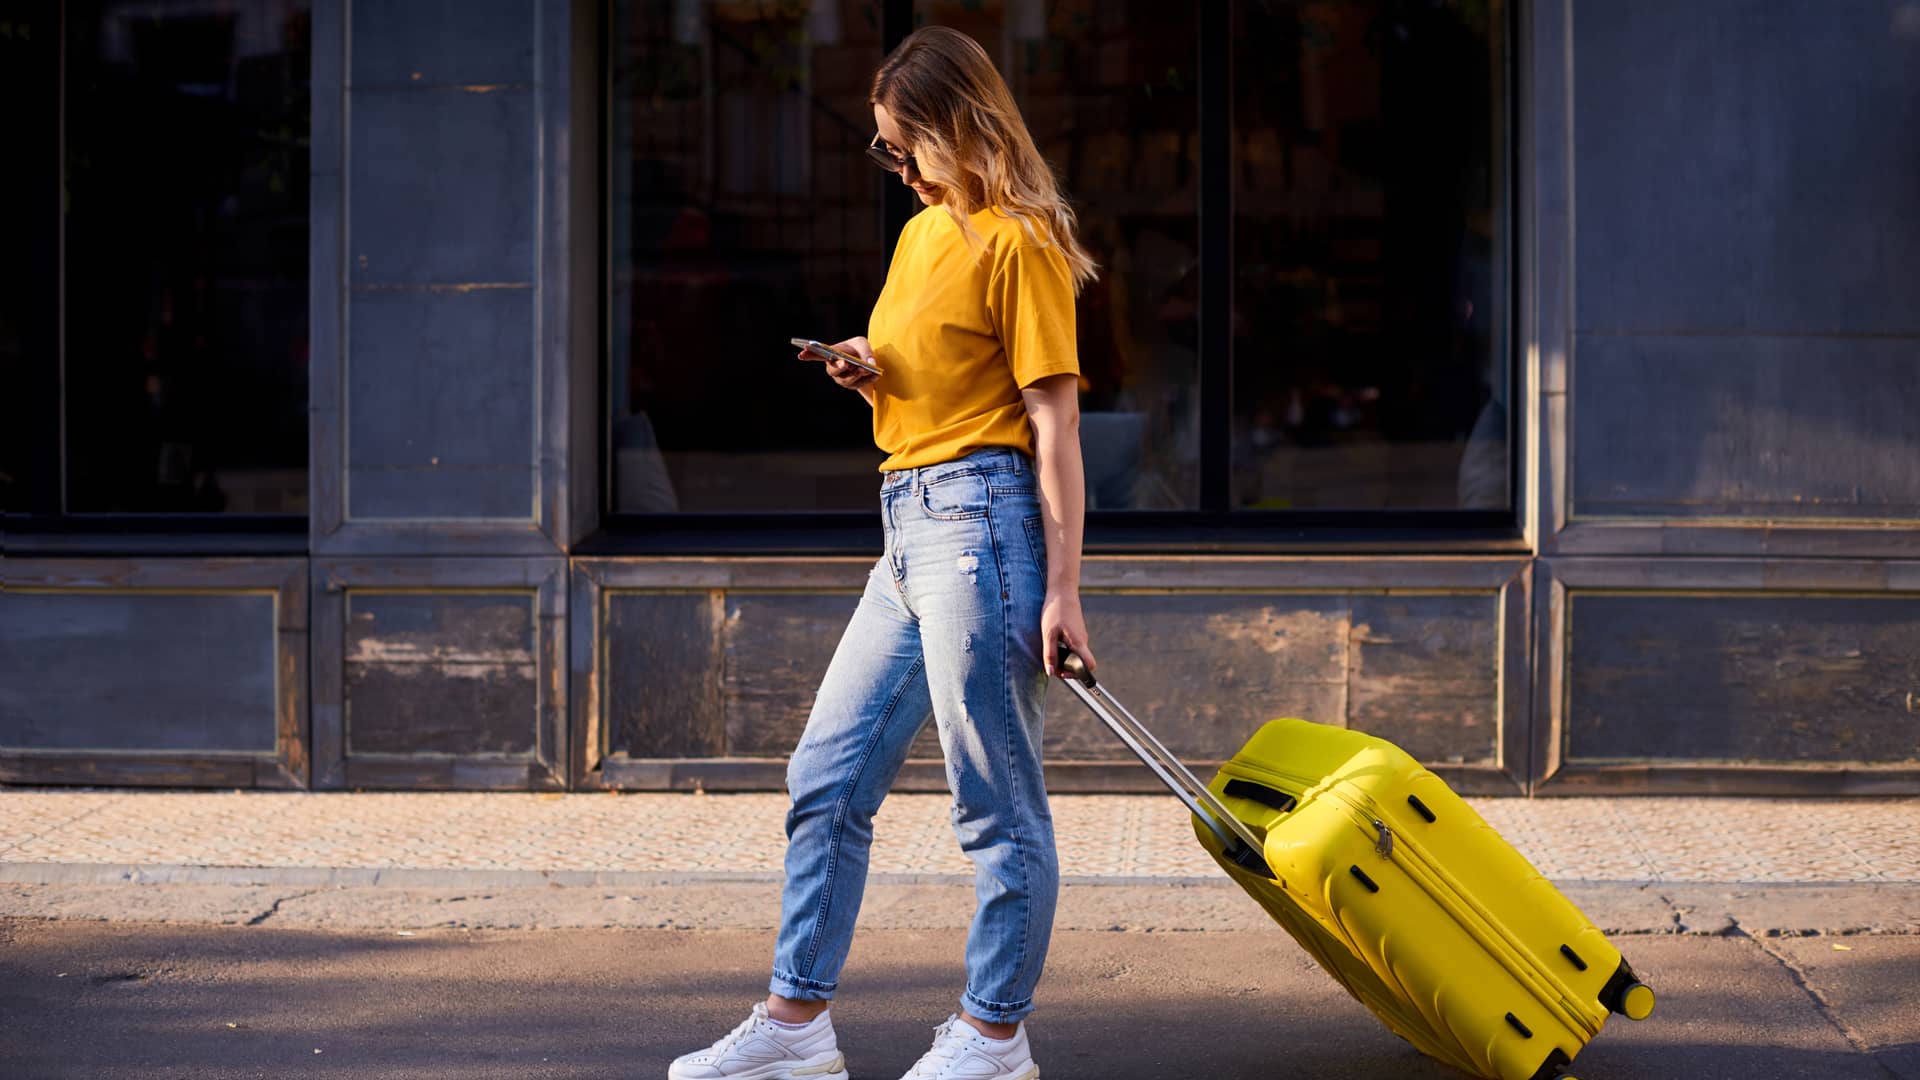 Joven con camiseta.y maleta amarillas utiliza su smartphone tras haber consultado previamente las condiciones de roaming de su contrato jazztel